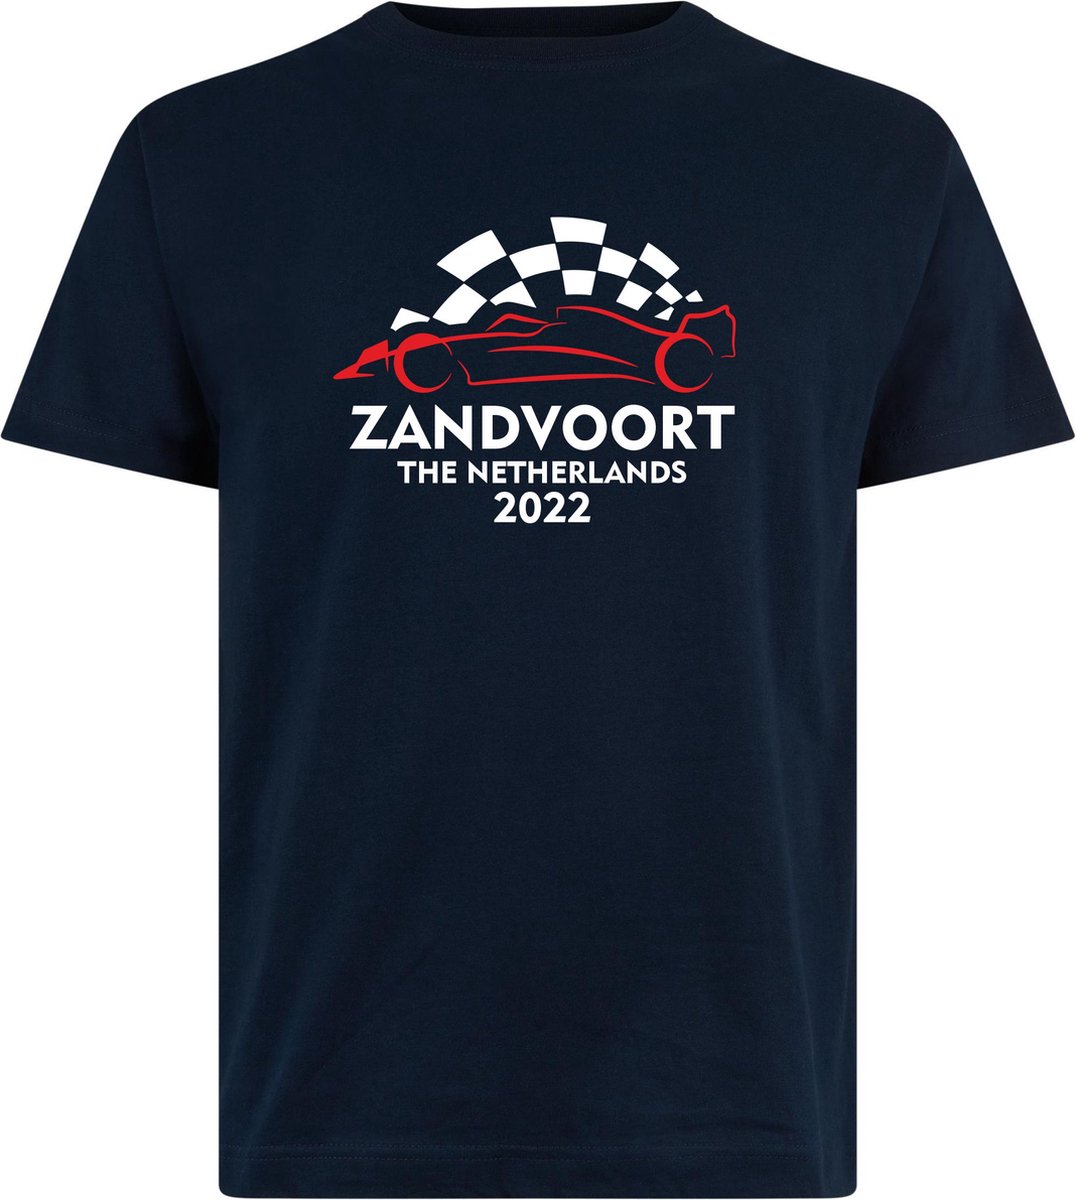 T-shirt Zandvoort 2022 met raceauto | Max Verstappen / Red Bull Racing / Formule 1 fan | Grand Prix Circuit Zandvoort | kleding shirt | Navy | maat XS